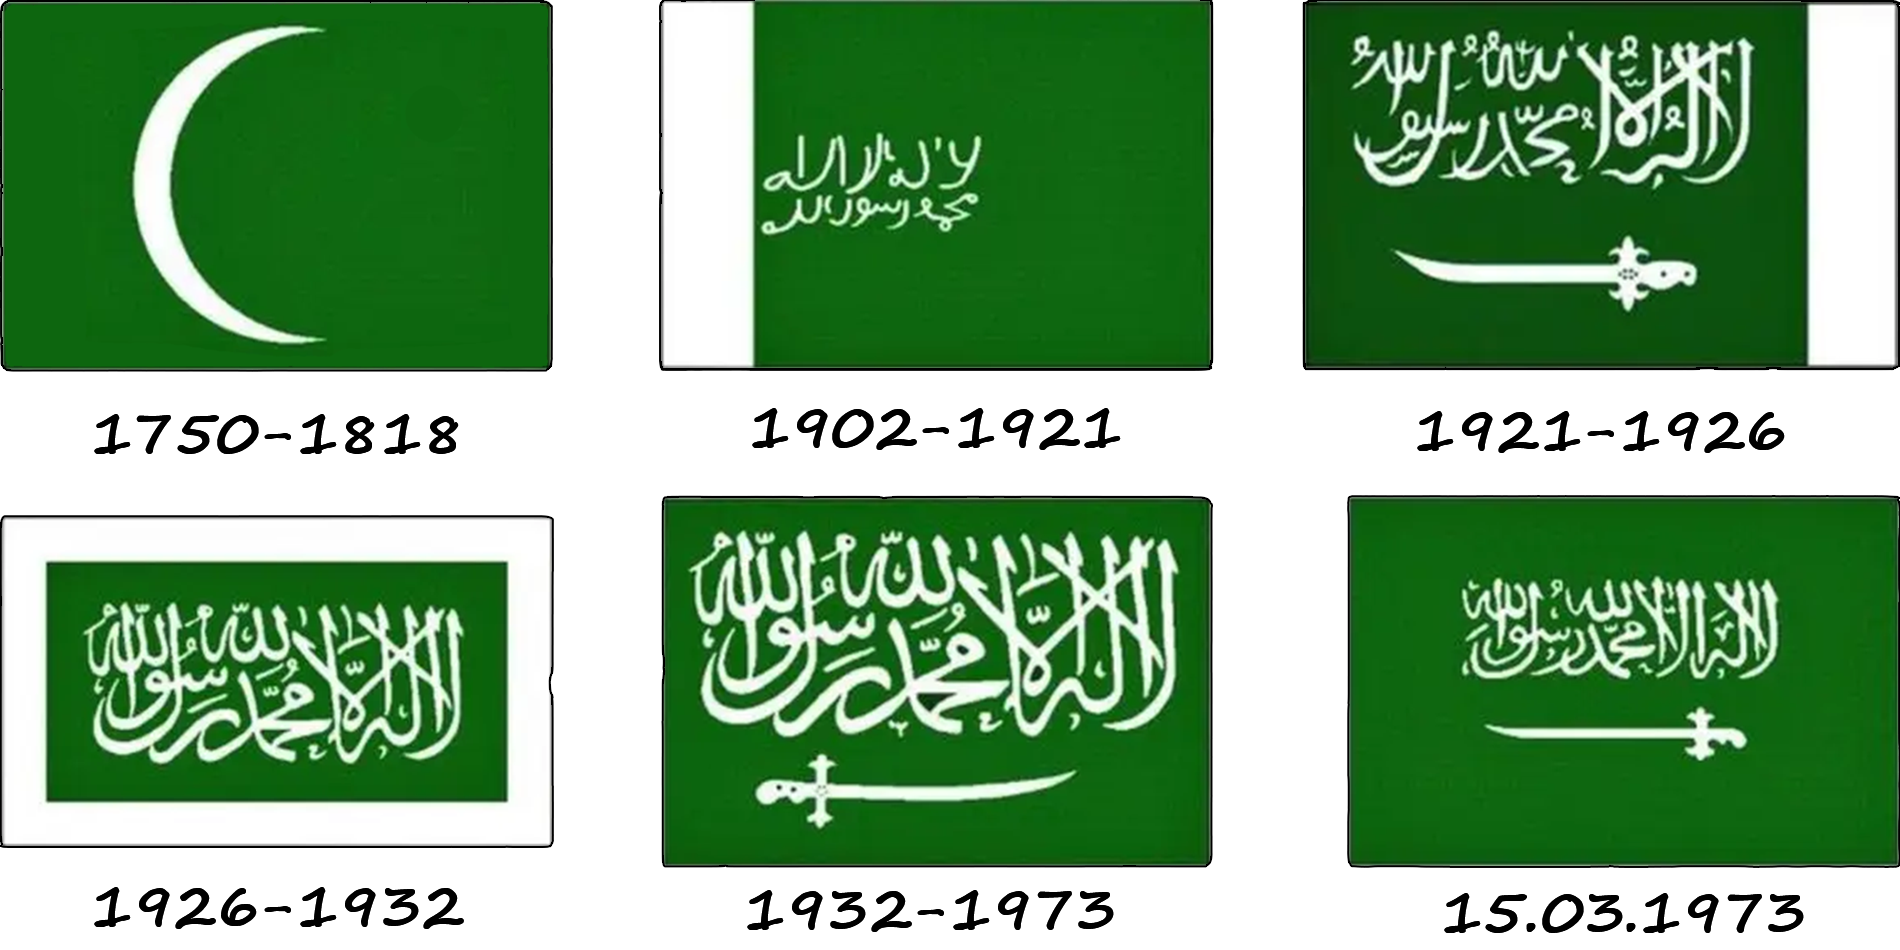 Comment le drapeau de l'Arabie saoudite a-t-il changé ? Histoire du drapeau de l'Arabie saoudite